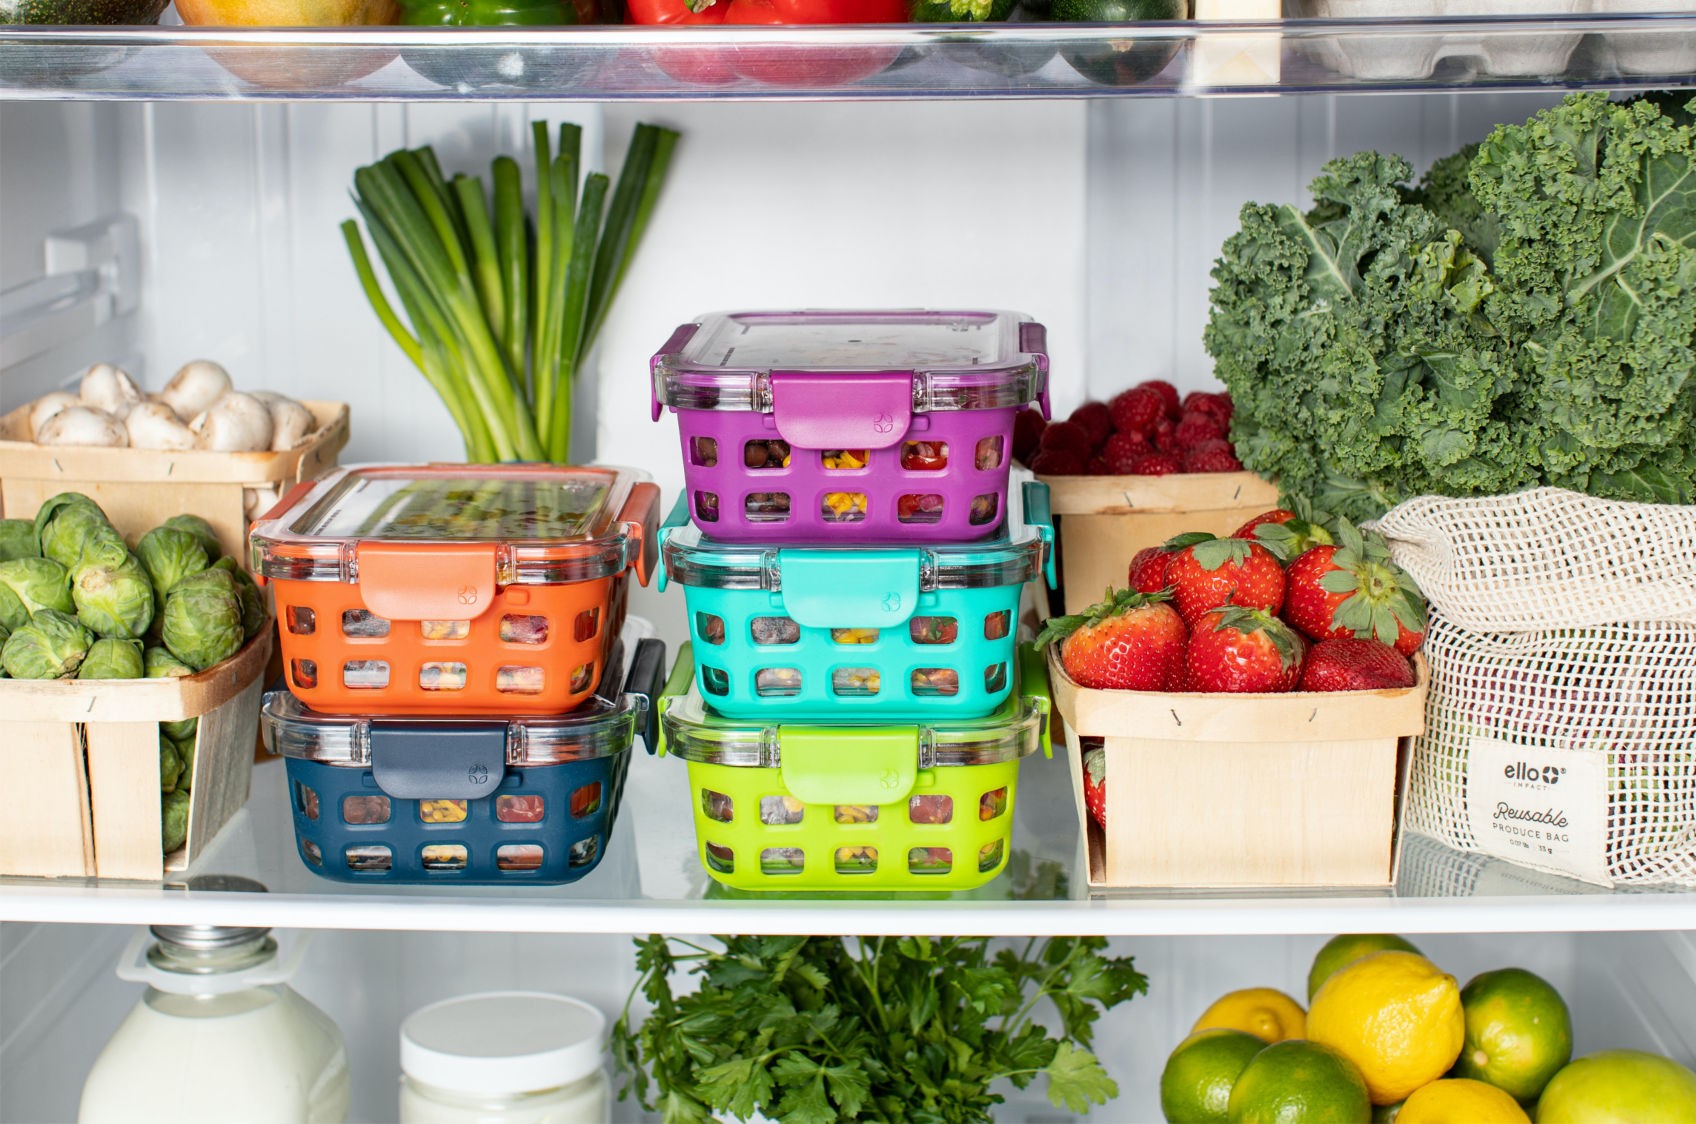 Farebné dózy s potravinami a ingrediencie ako zelenina a ovocie v otvorenej chladničke na poličkách.